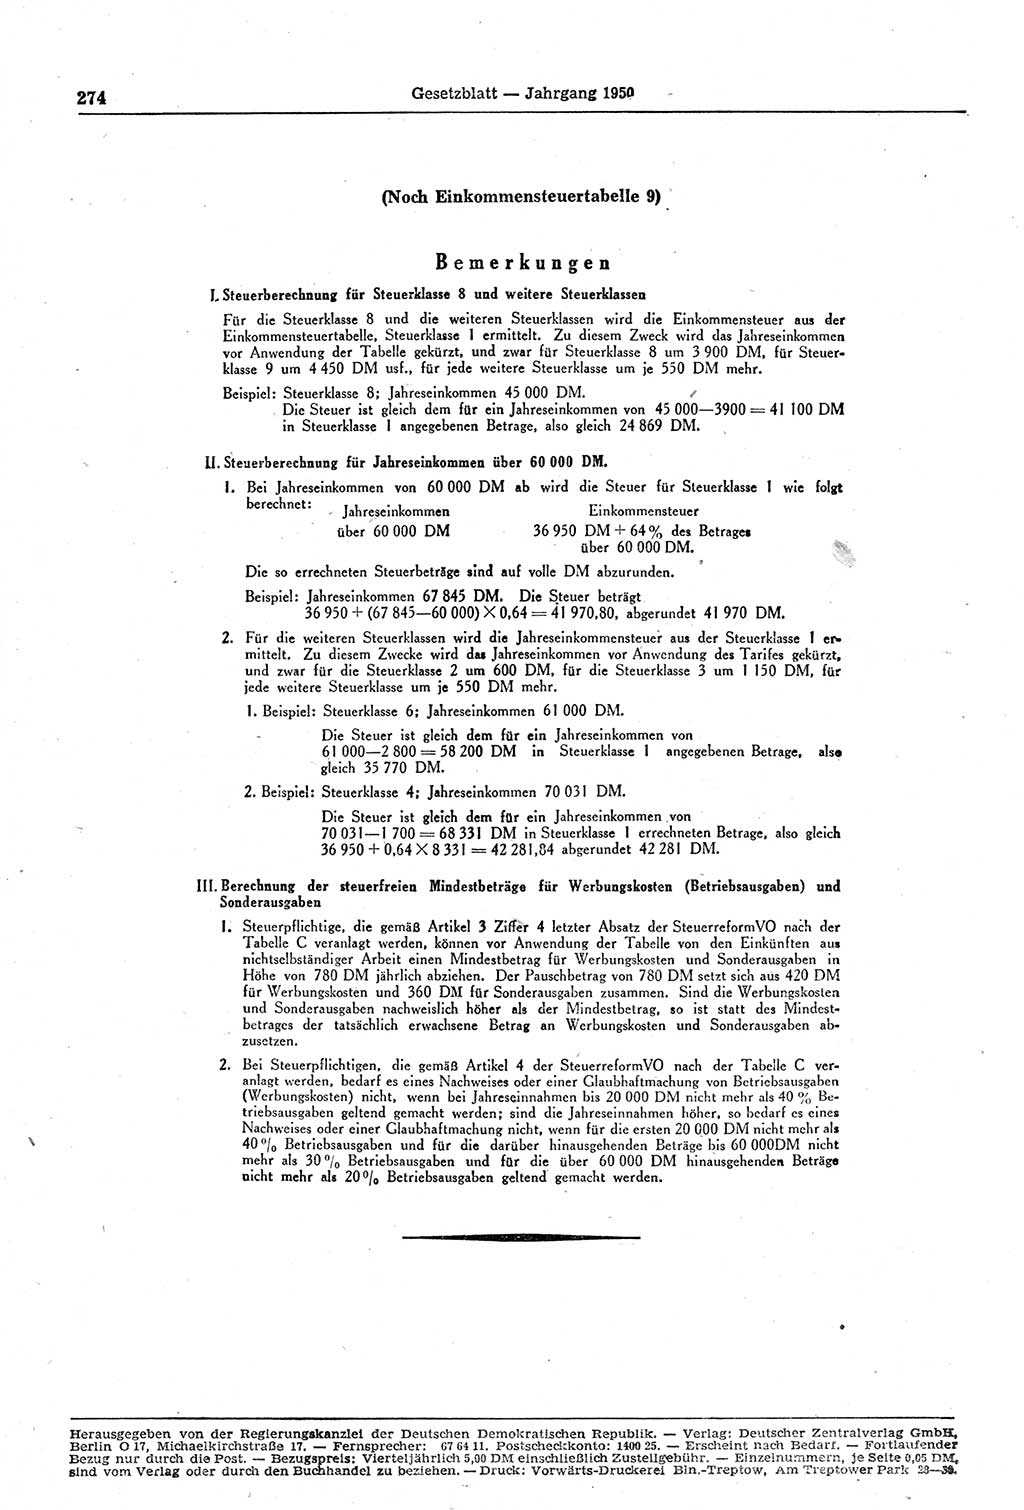 Gesetzblatt (GBl.) der Deutschen Demokratischen Republik (DDR) 1950, Seite 274 (GBl. DDR 1950, S. 274)